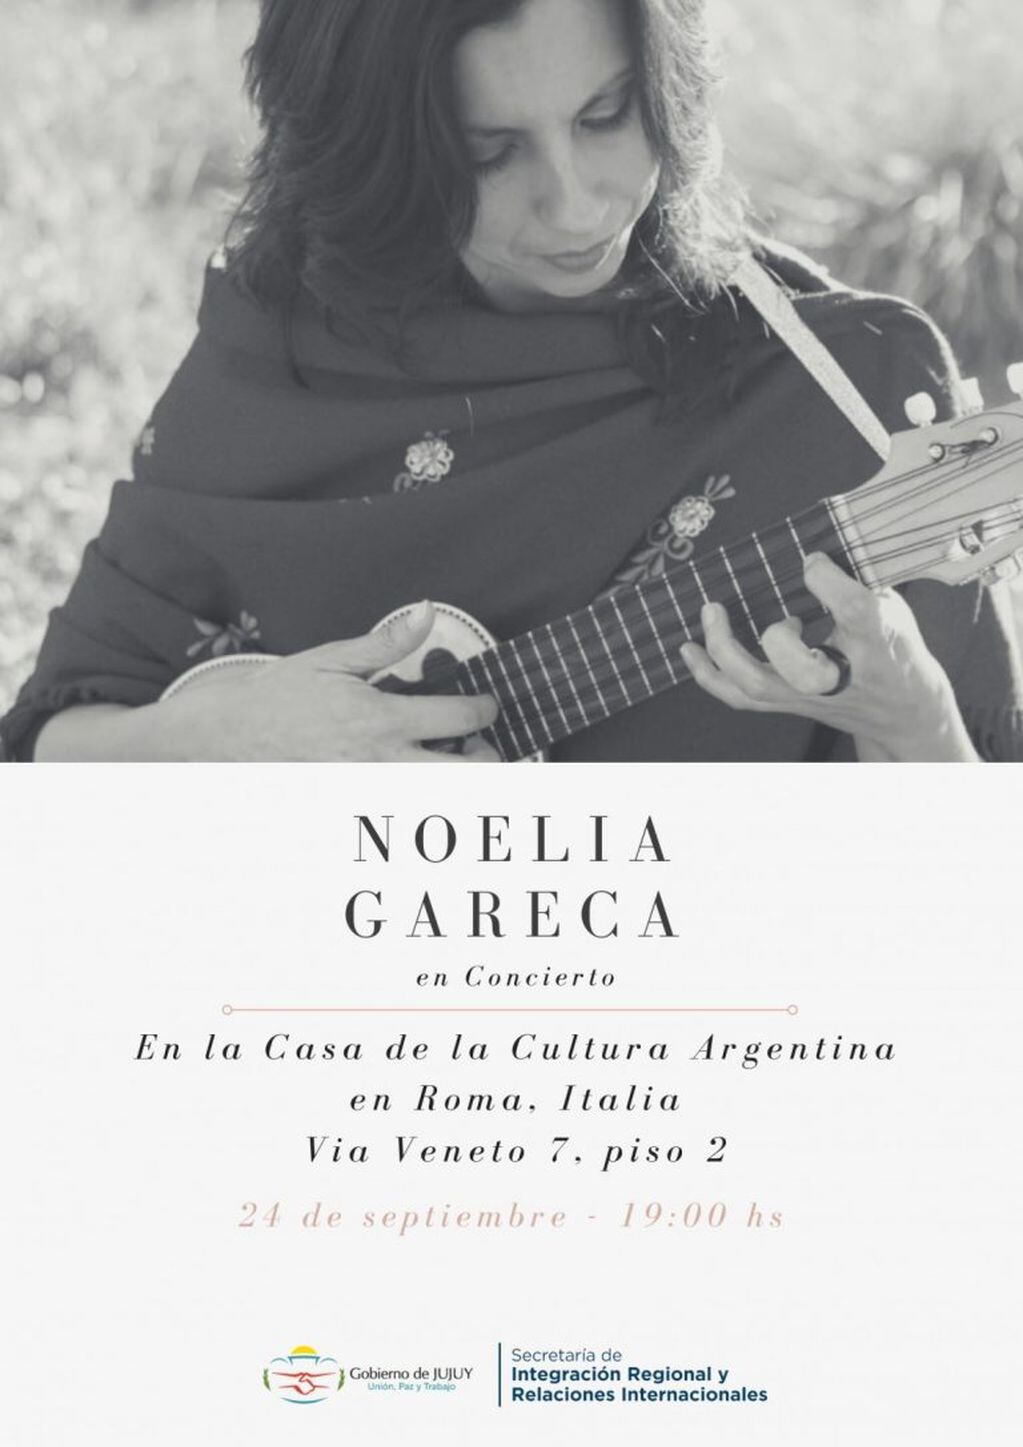 La invitación a presenciar la acutación de Noelia Gareca en la capital italiana el martes próximo.